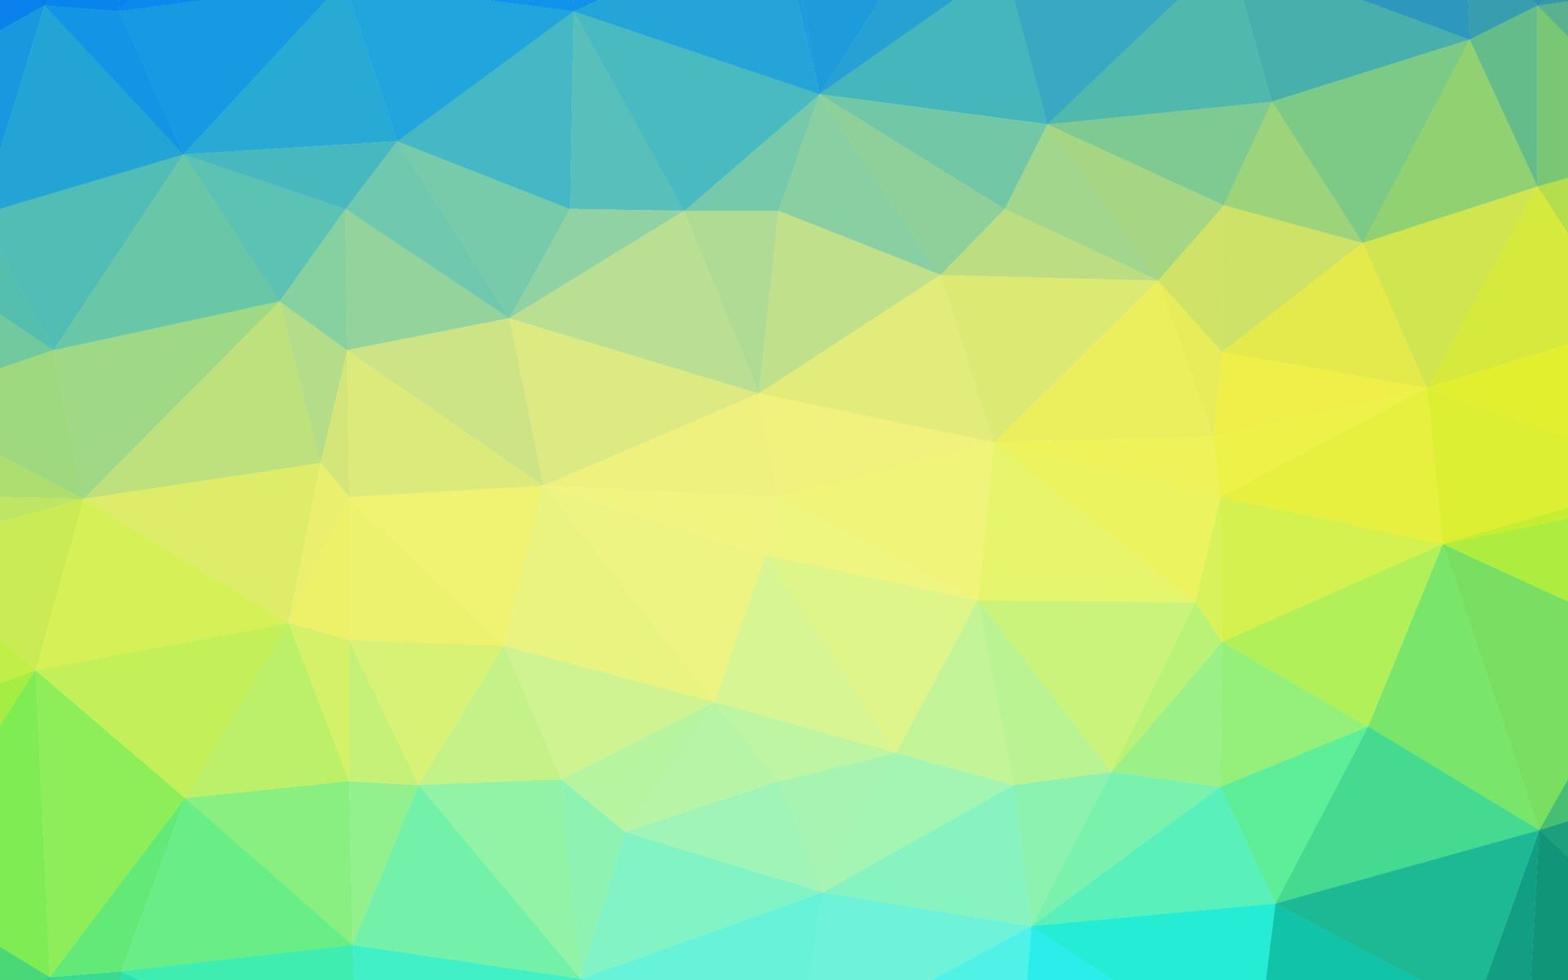 modelo de mosaico de triângulo de vetor azul claro e amarelo.